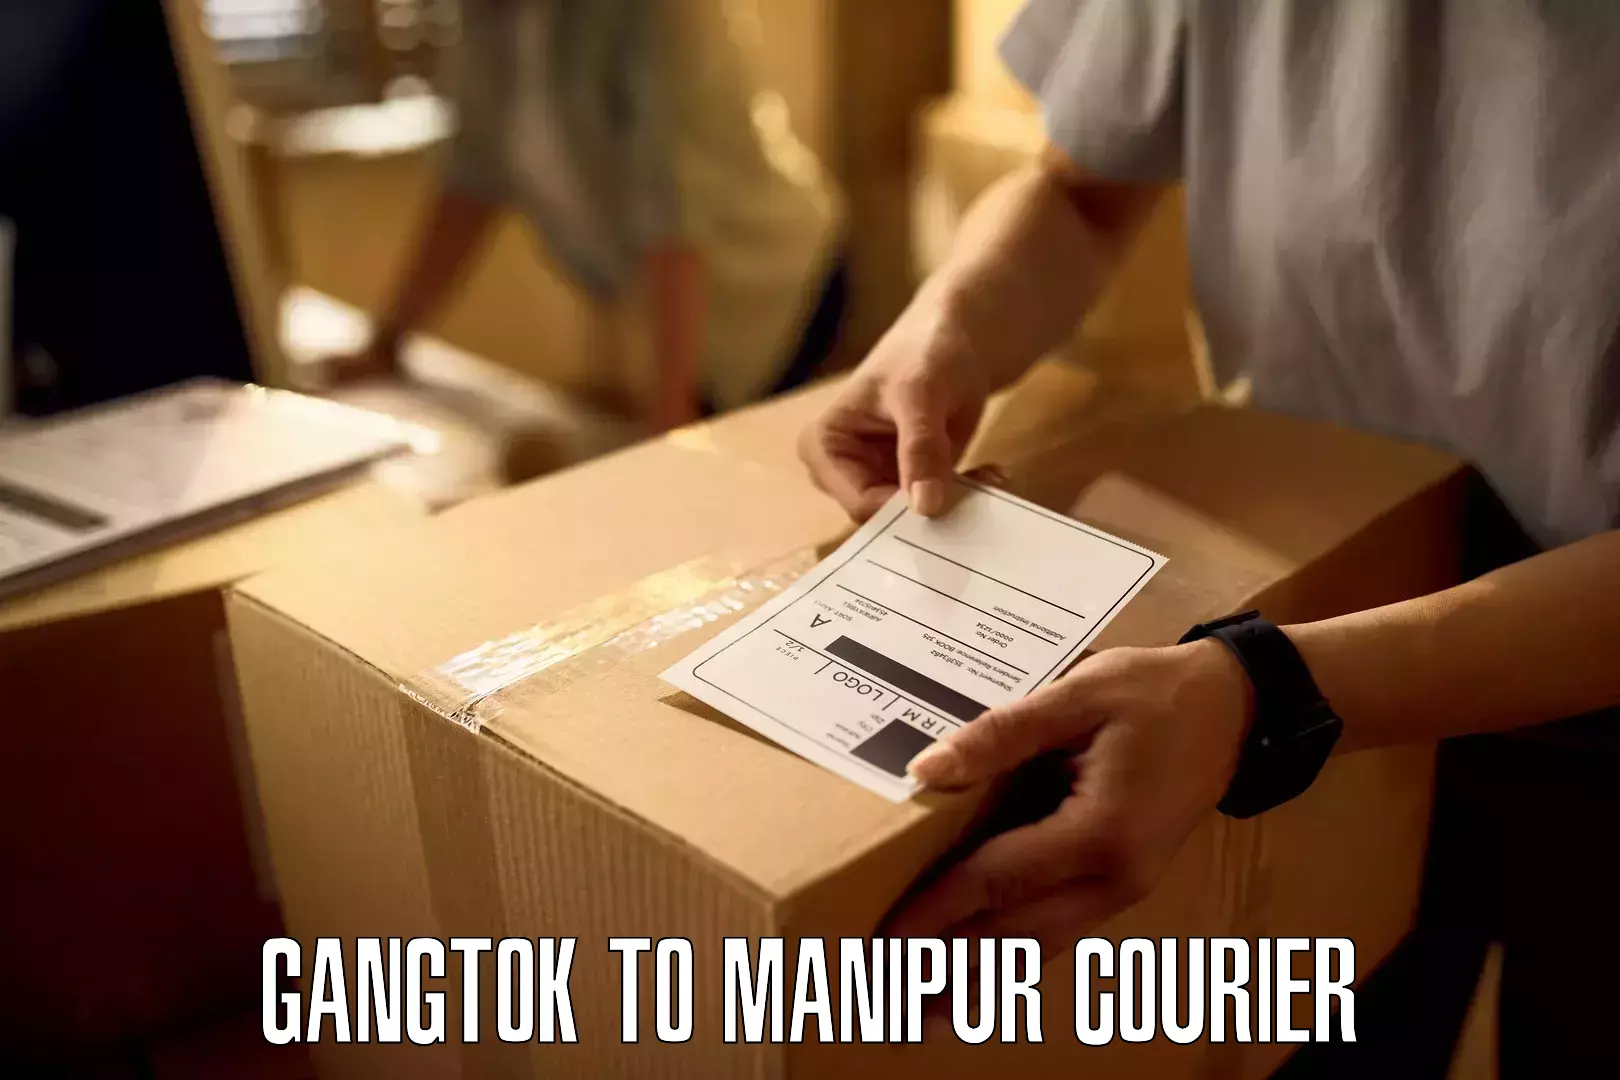 Nationwide shipping capabilities Gangtok to Kakching